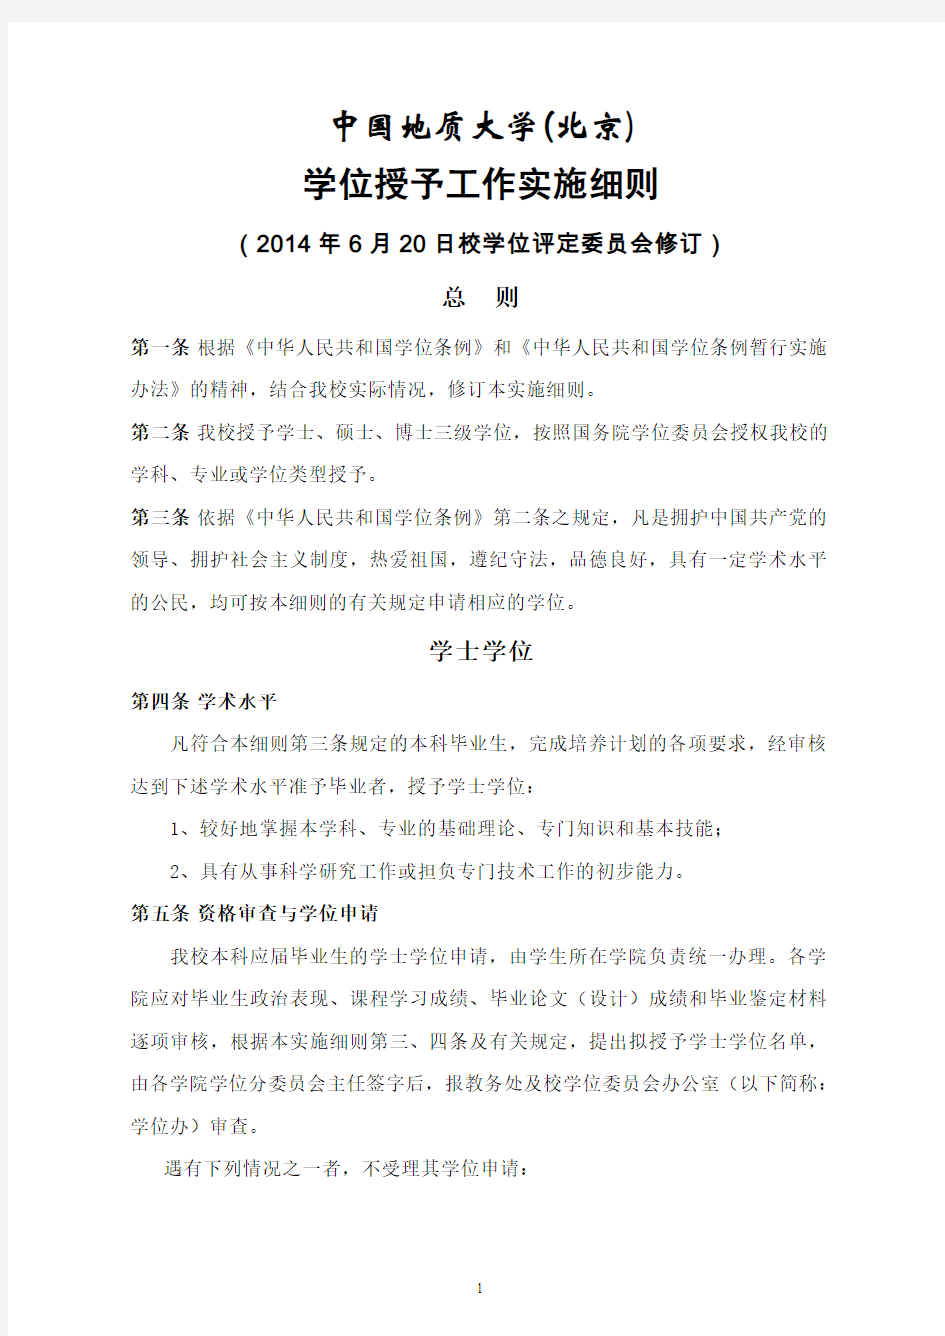 中国地质大学北京学位授予工作实施细则-康邦内容管理系统